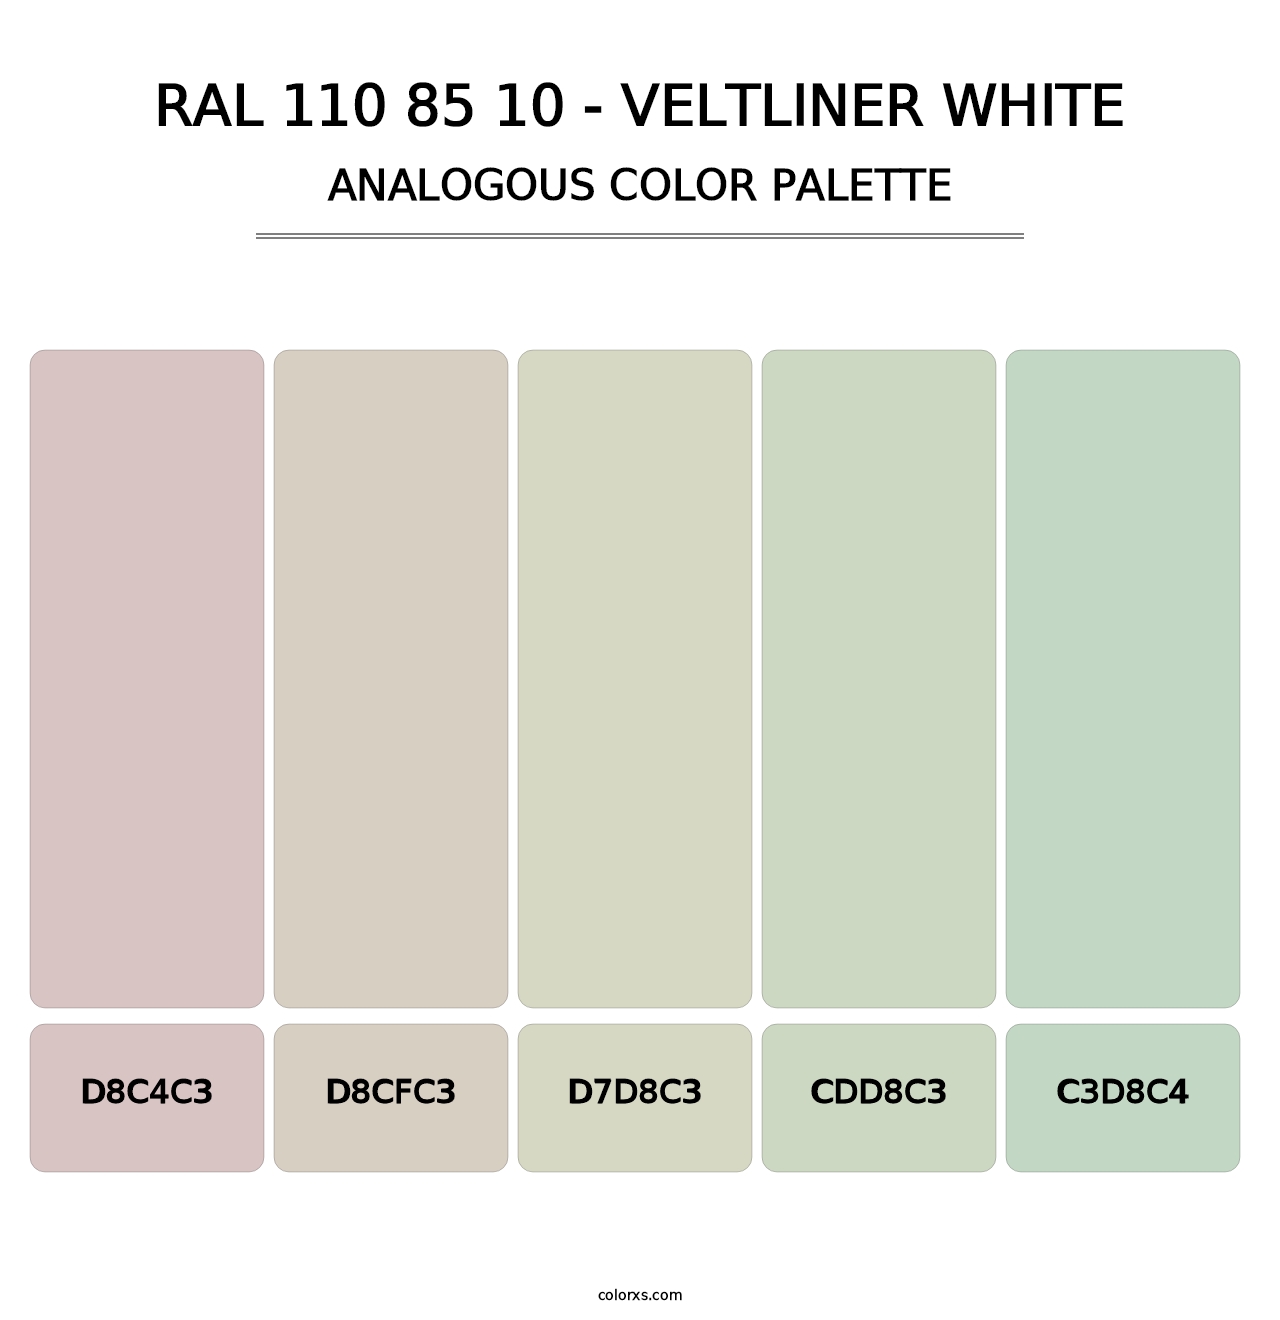 RAL 110 85 10 - Veltliner White - Analogous Color Palette